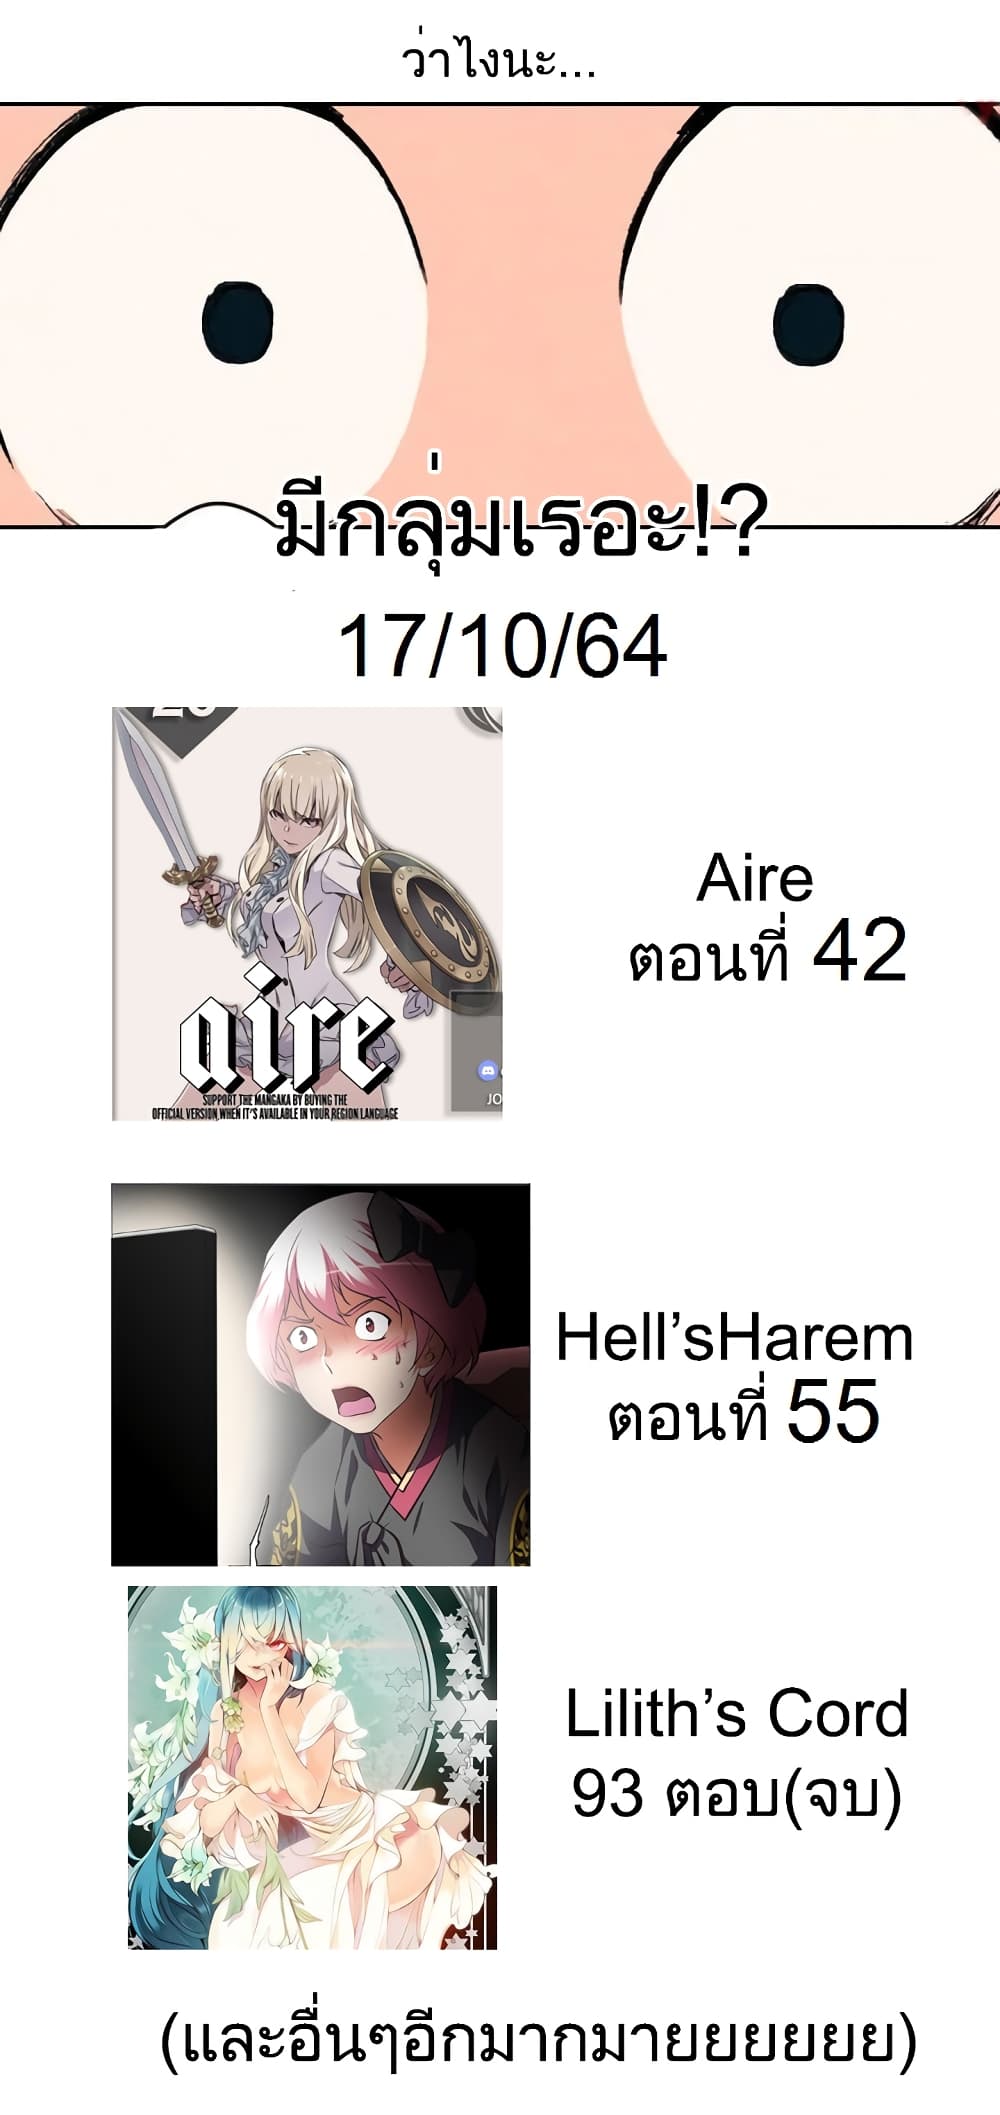 Hell's Harem 38 (11)